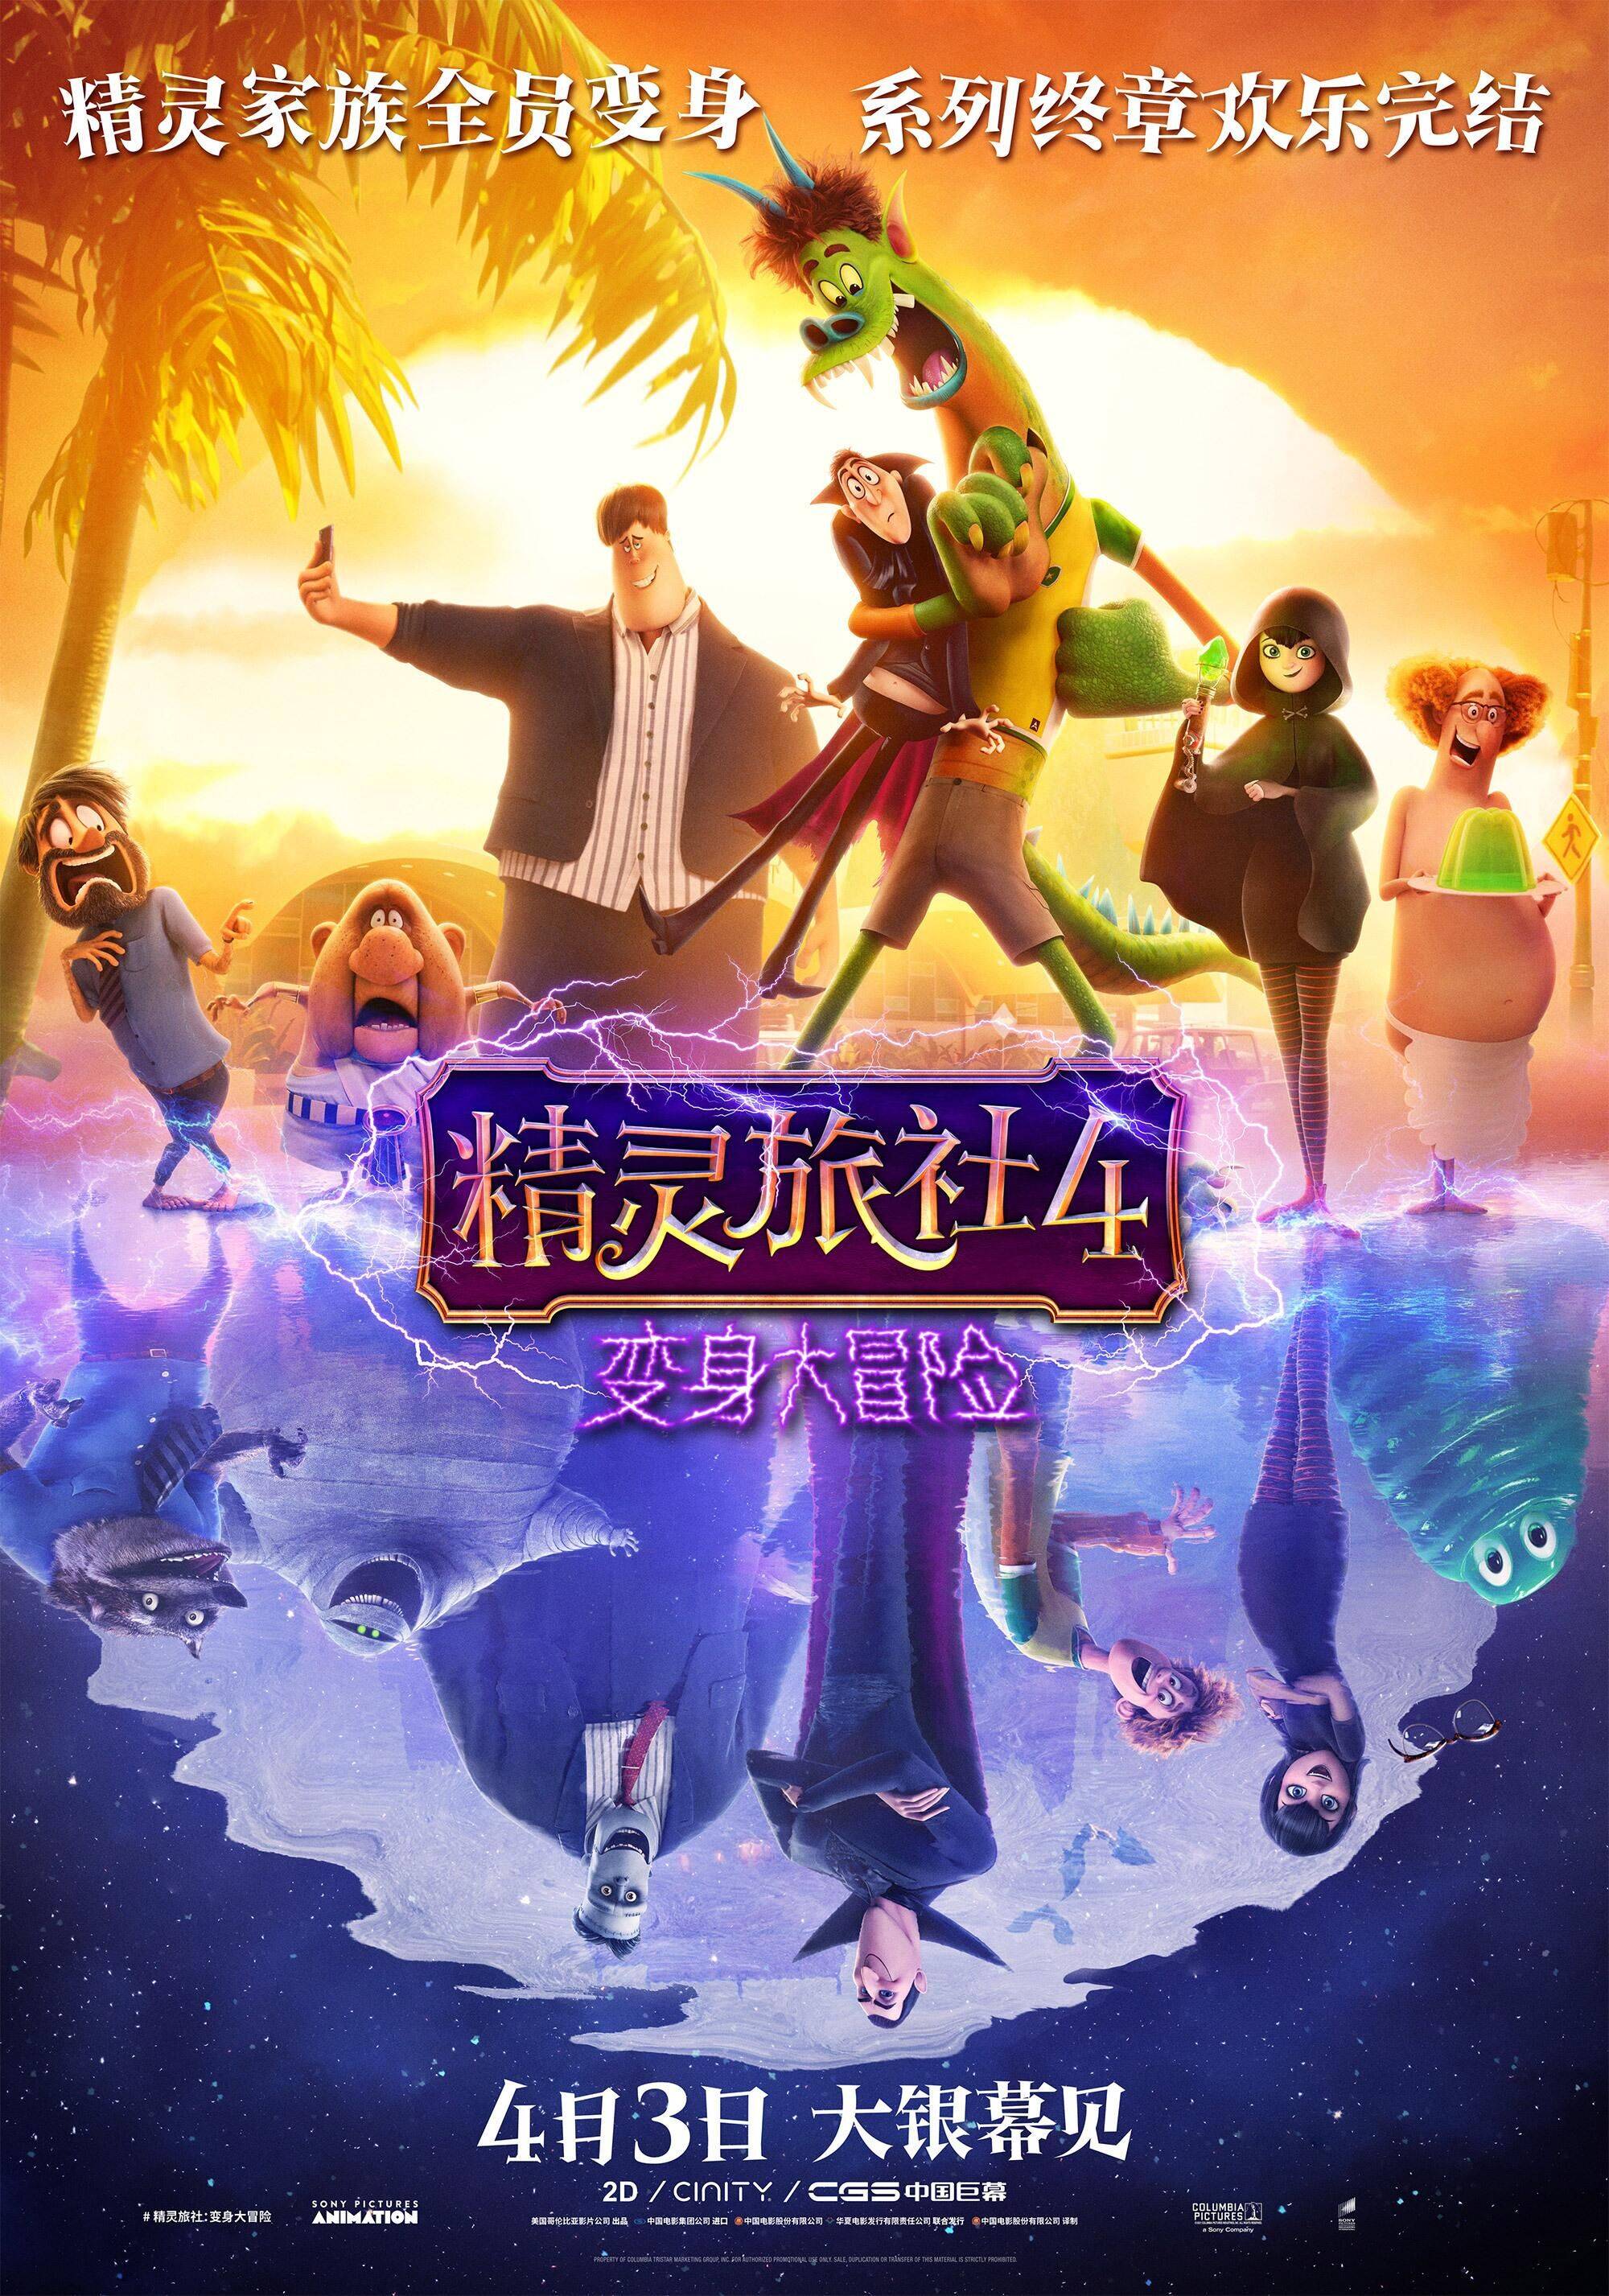 动画电影《精灵旅社4》官宣中国内地正式定档4月3日上映